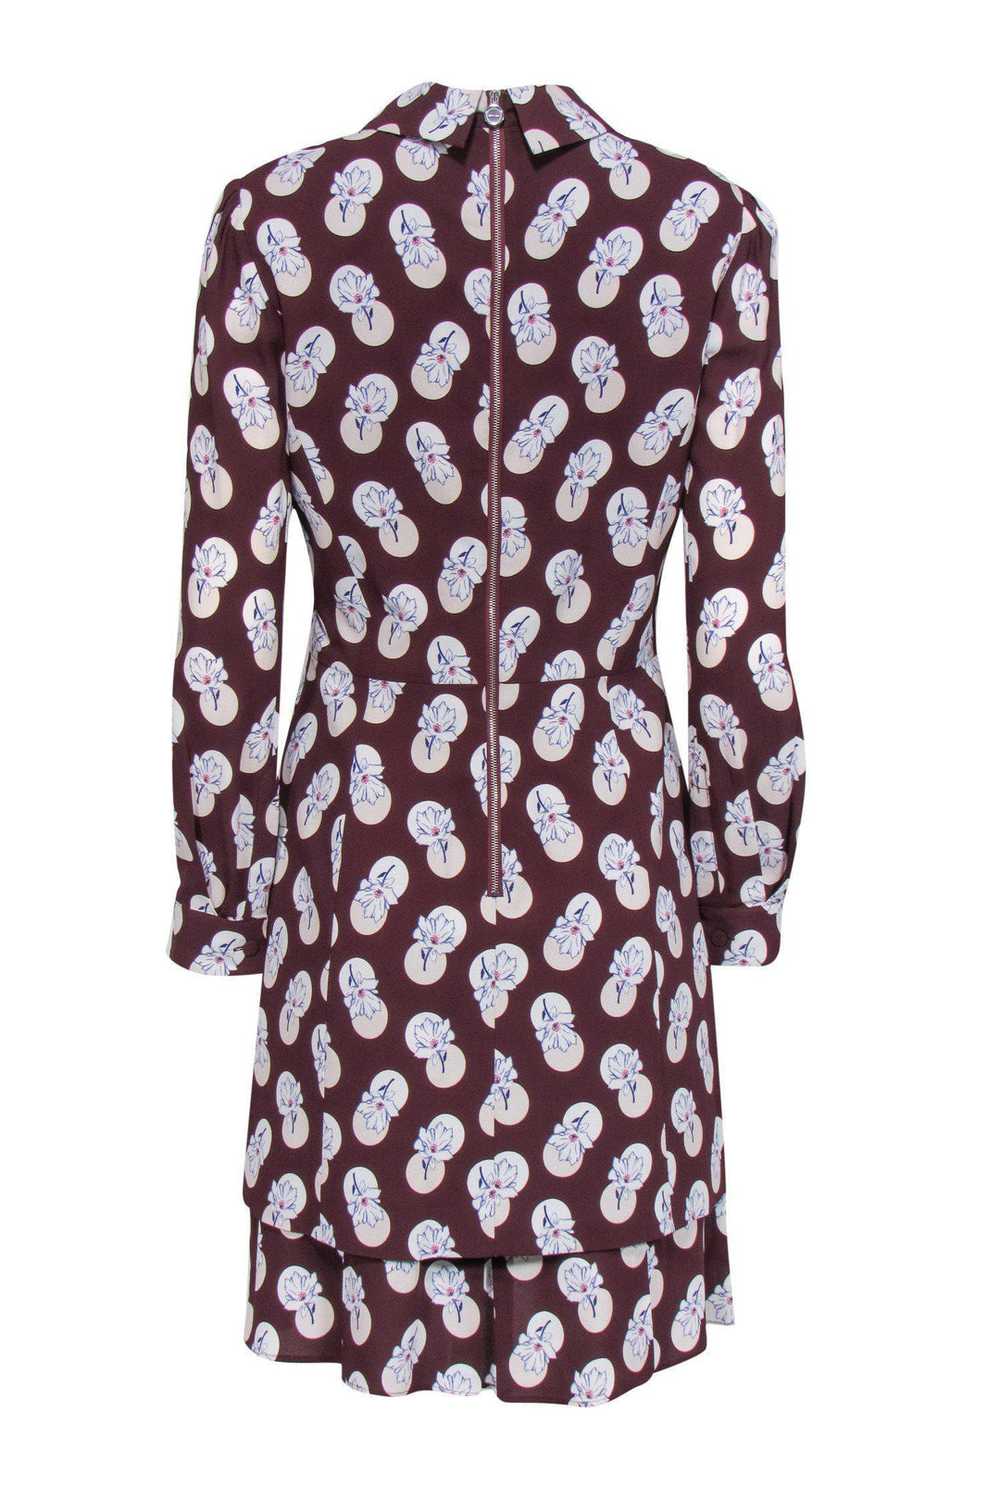 Carven - Burgundy & Floral Collared Dress Sz 2 - image 3